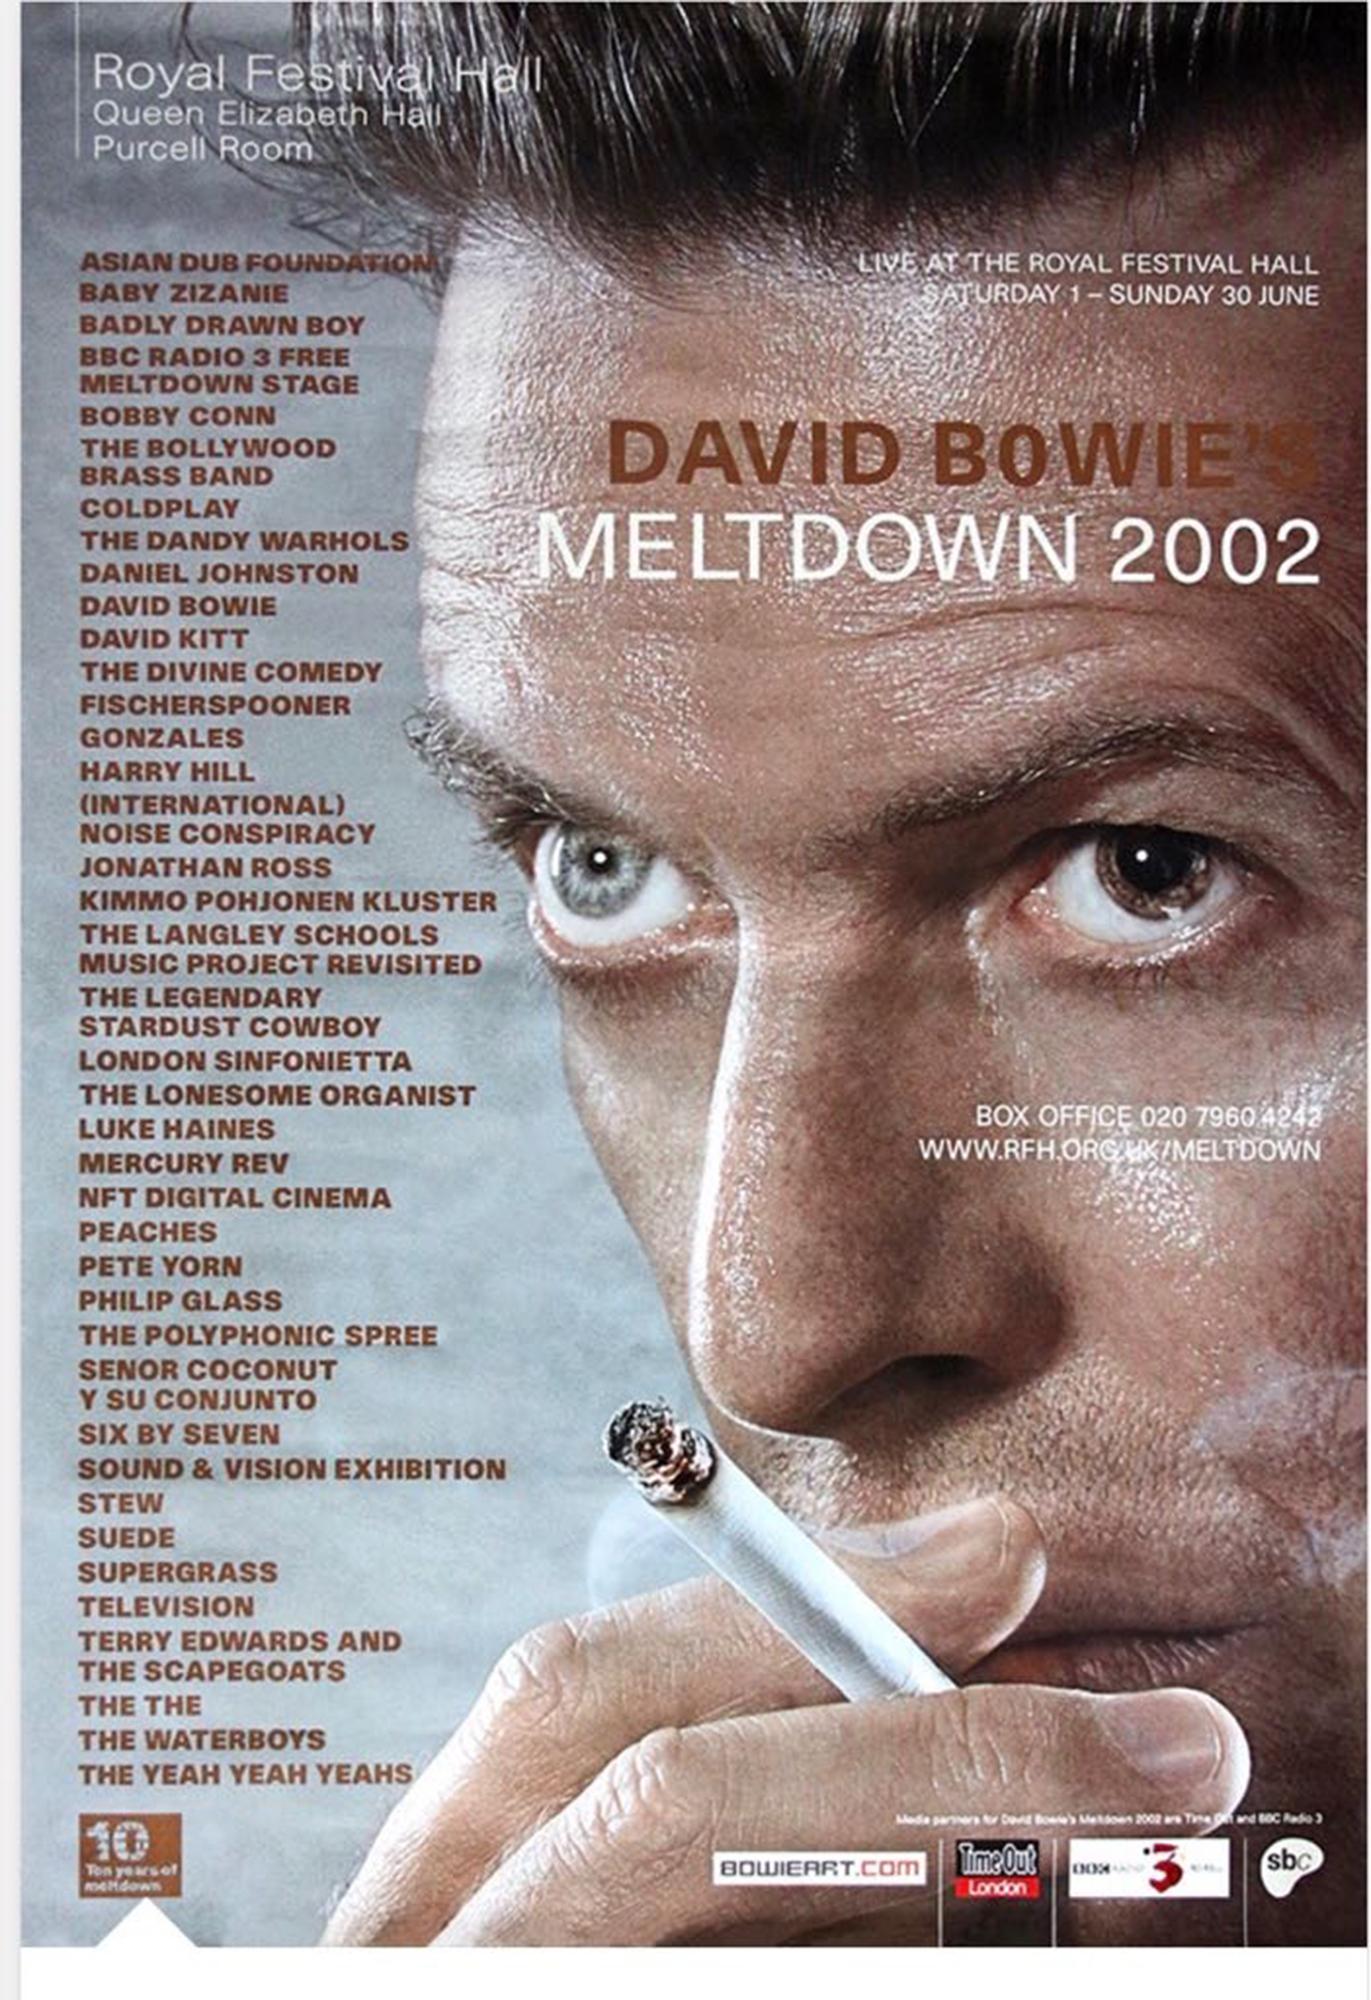 Alle David Bowie-Fans aufgepasst!...Dieses große und seltene Poster im Format 60